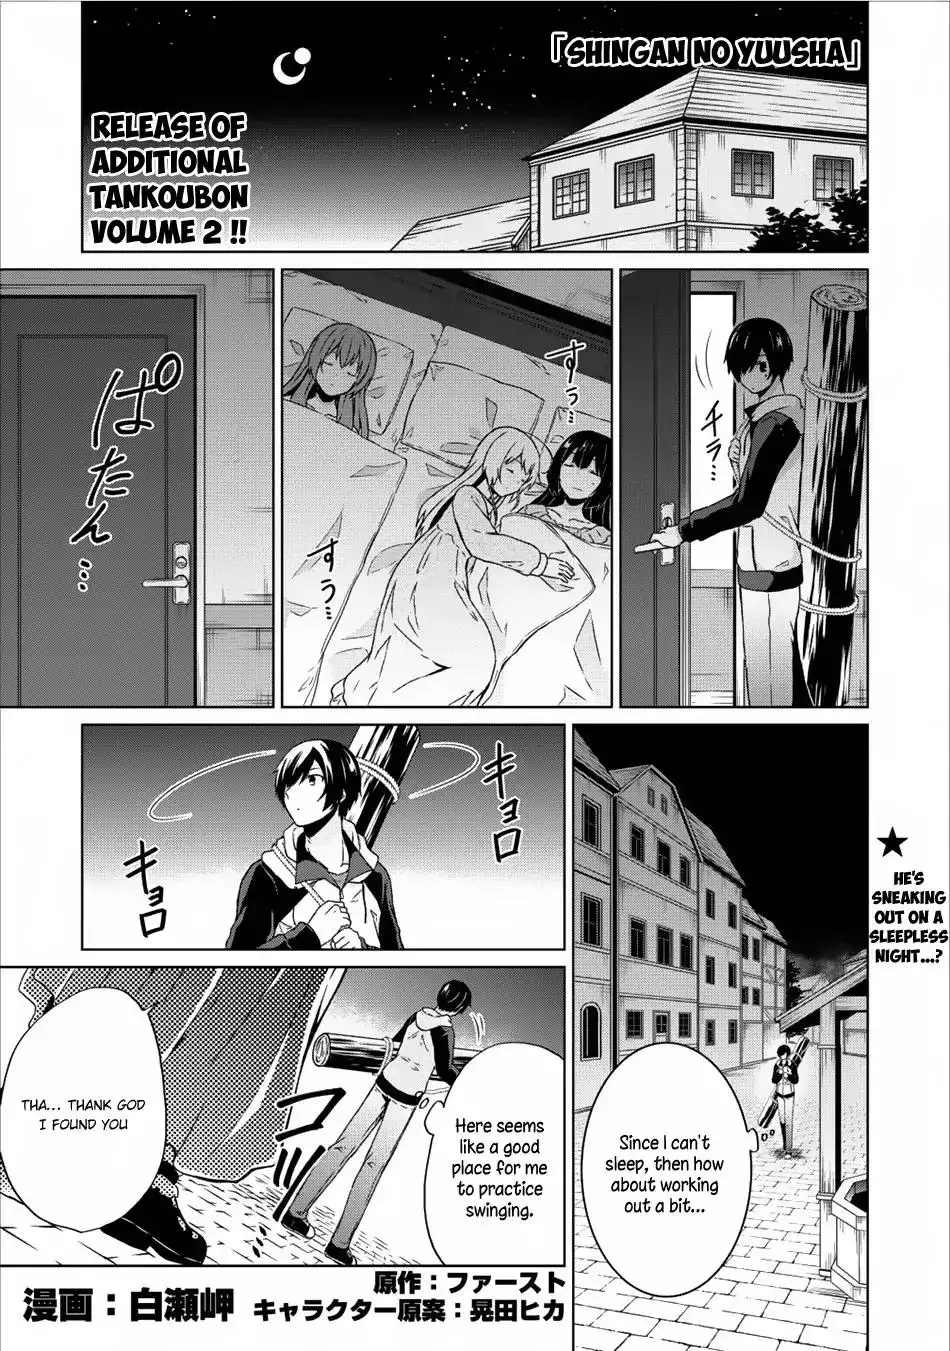 Shingan no Yuusha - 11 page 1